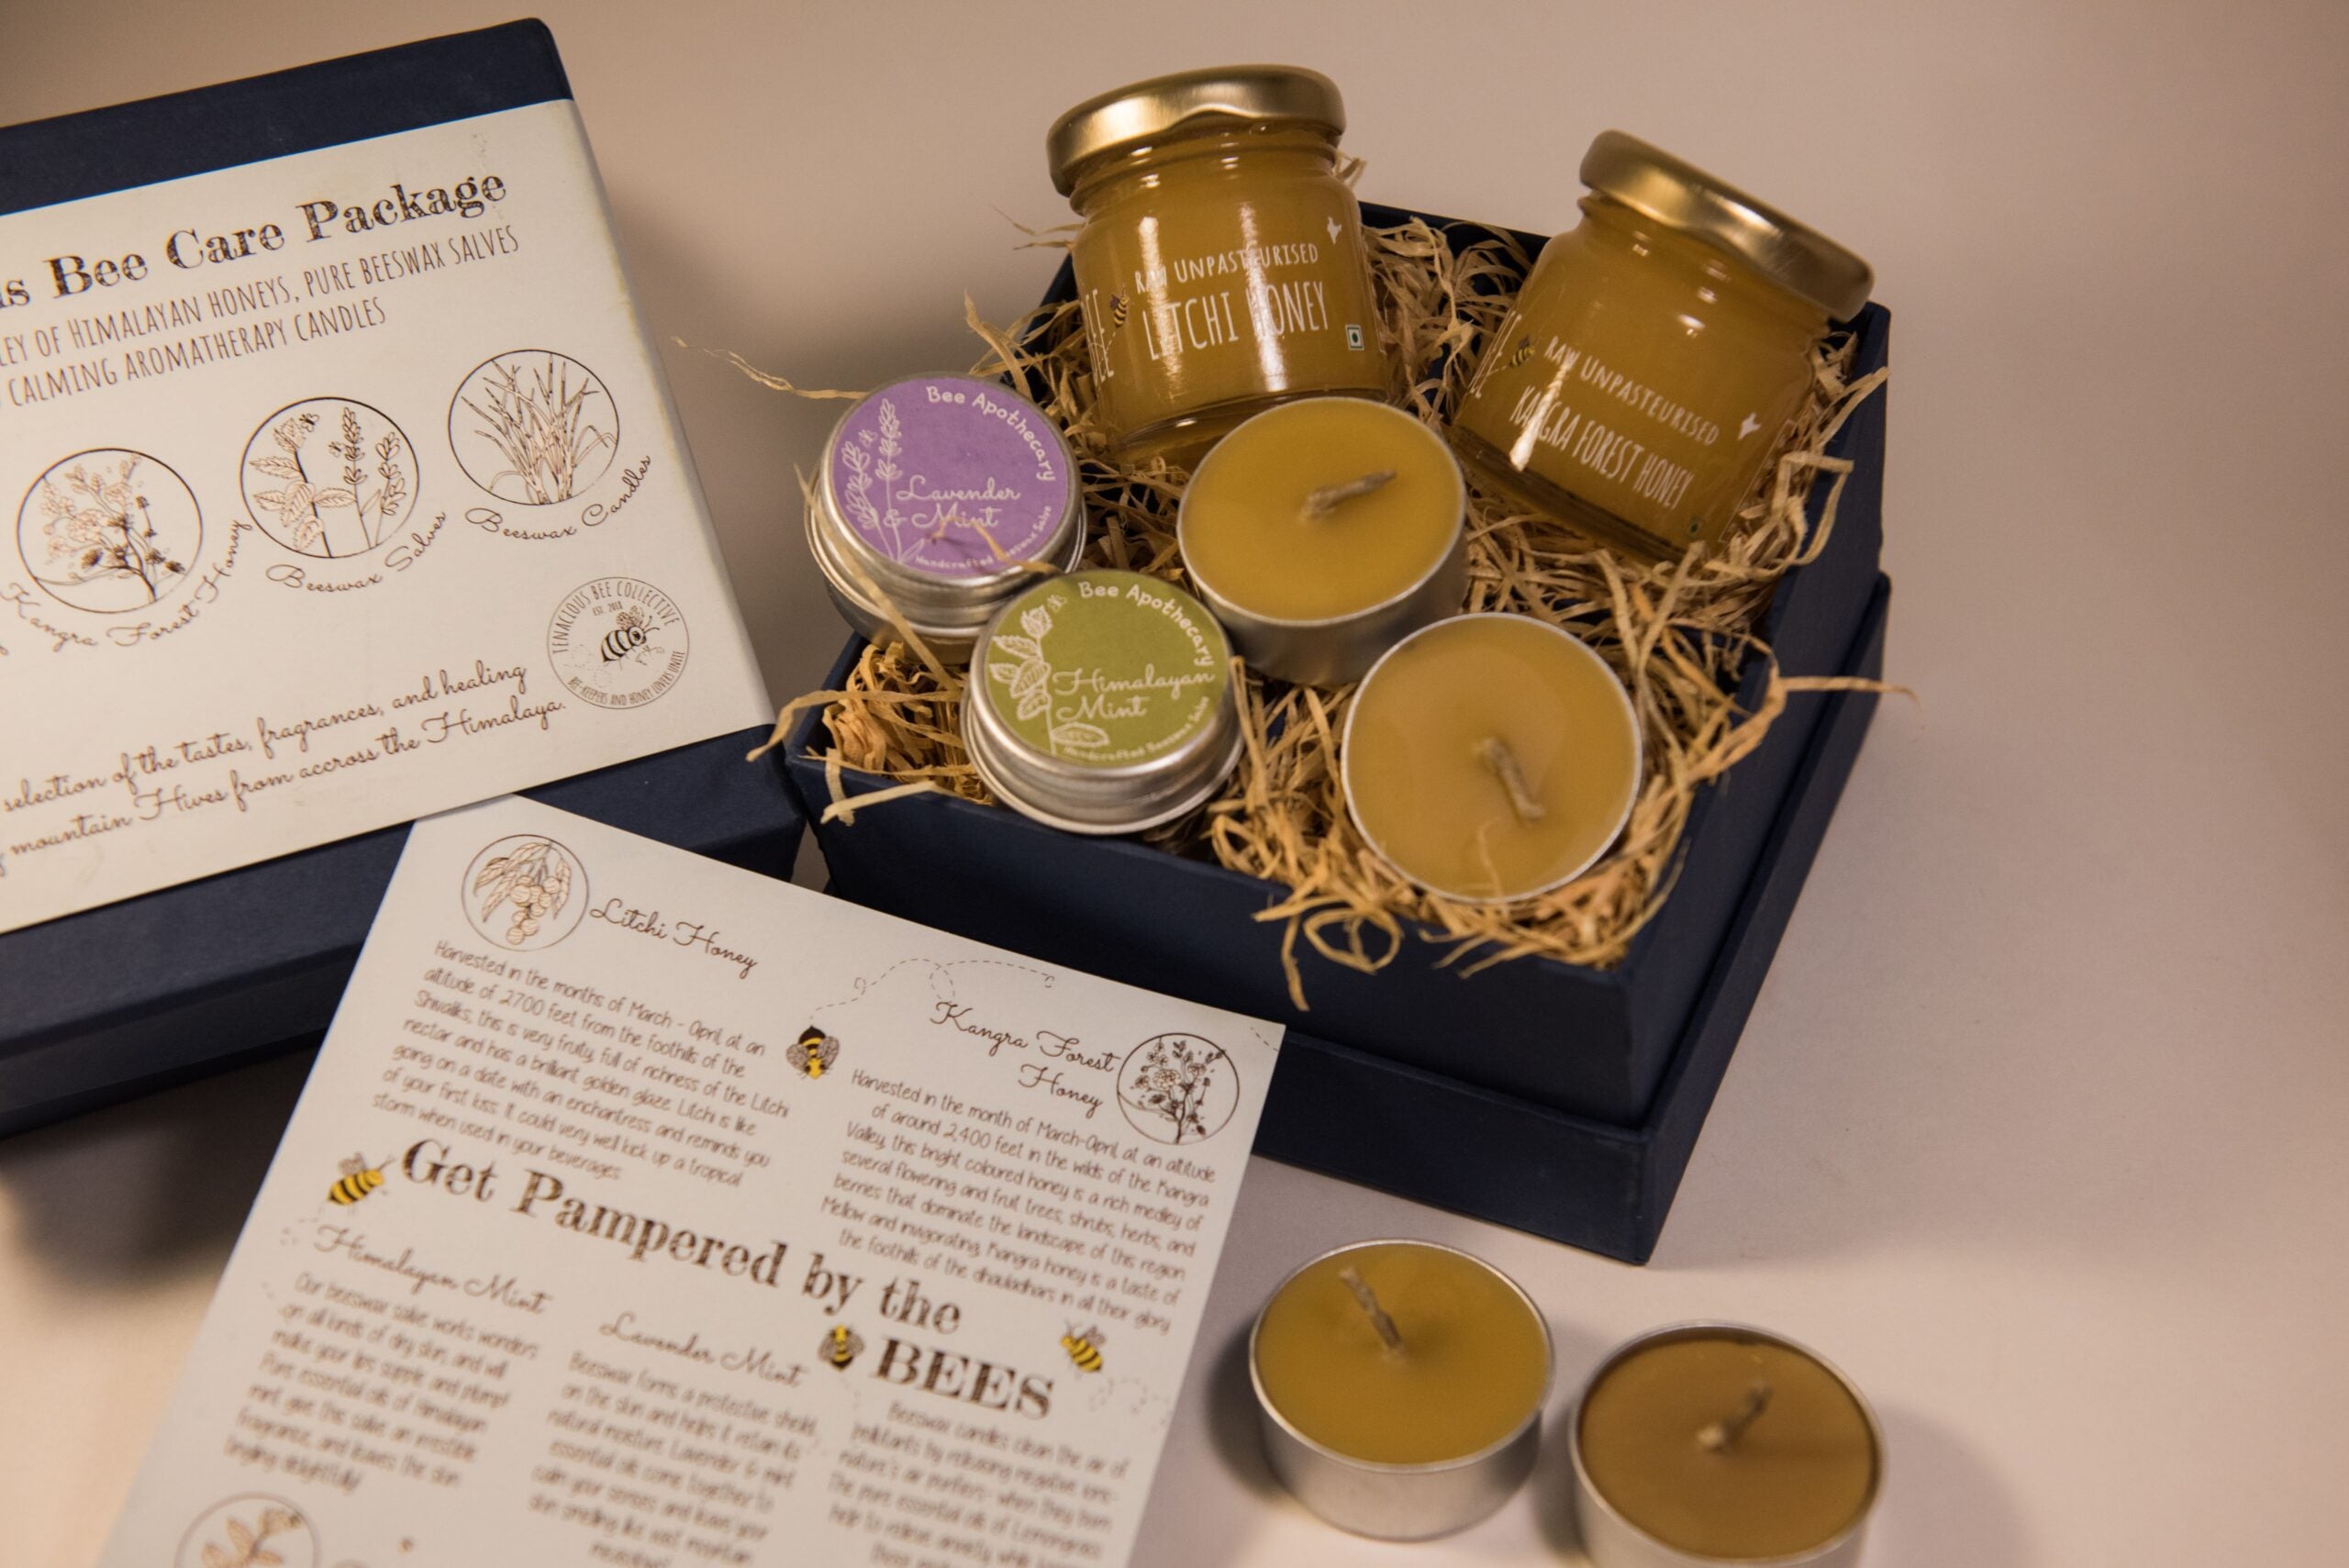 Tenacious Bee Care Package | Himalayan honey, Beeswax Salves, Candles